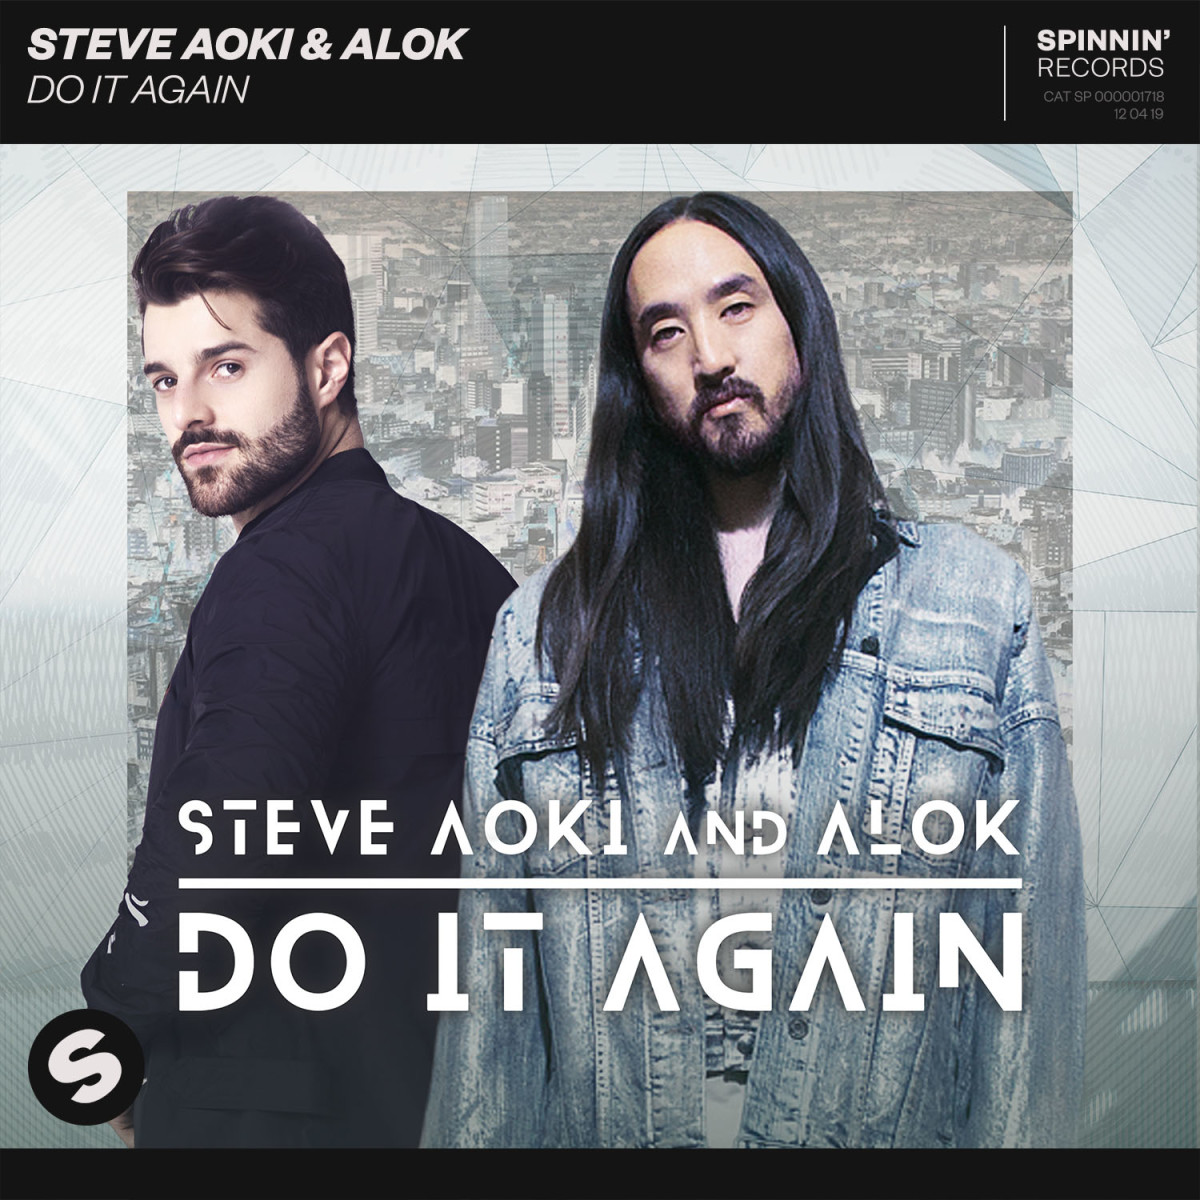 Steve Aoki & Alok - Do It Again (Album Artwork) - Spinnin' Records / Ultra Music